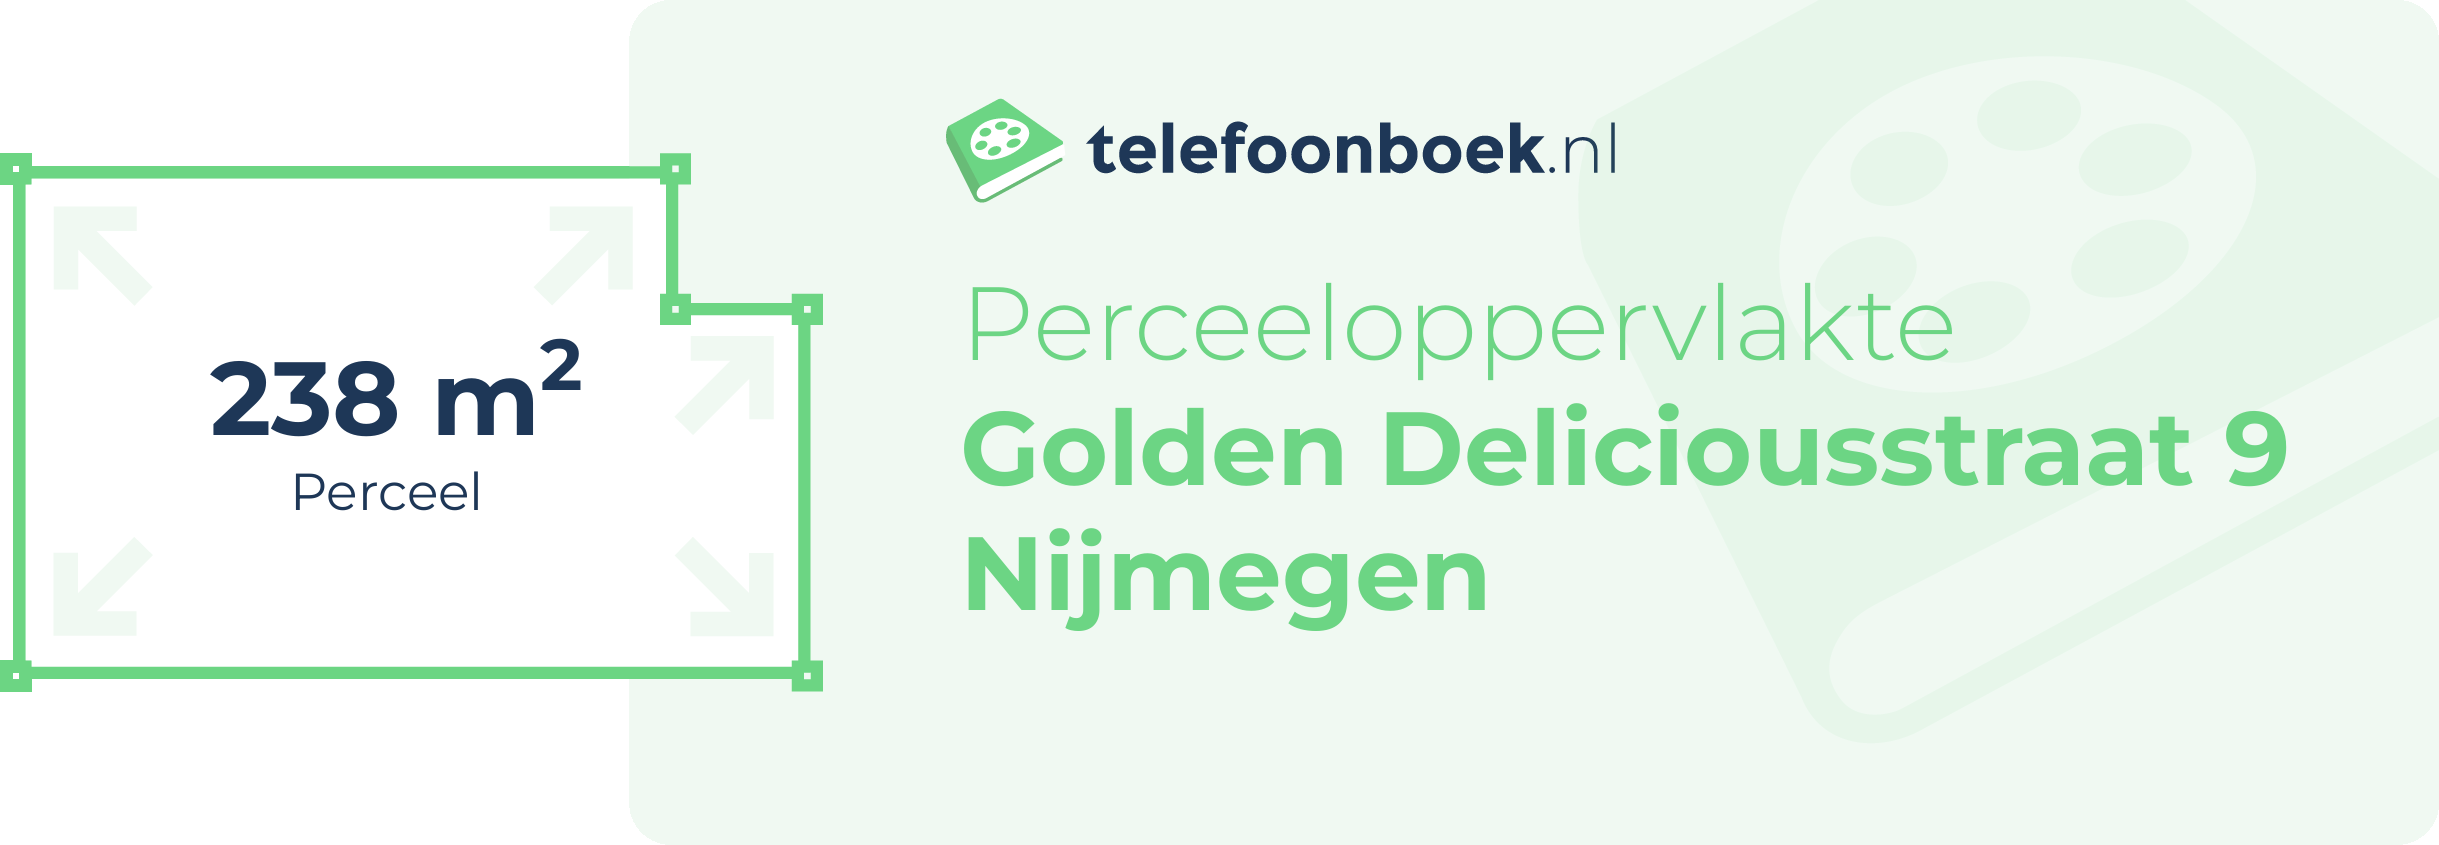 Perceeloppervlakte Golden Deliciousstraat 9 Nijmegen